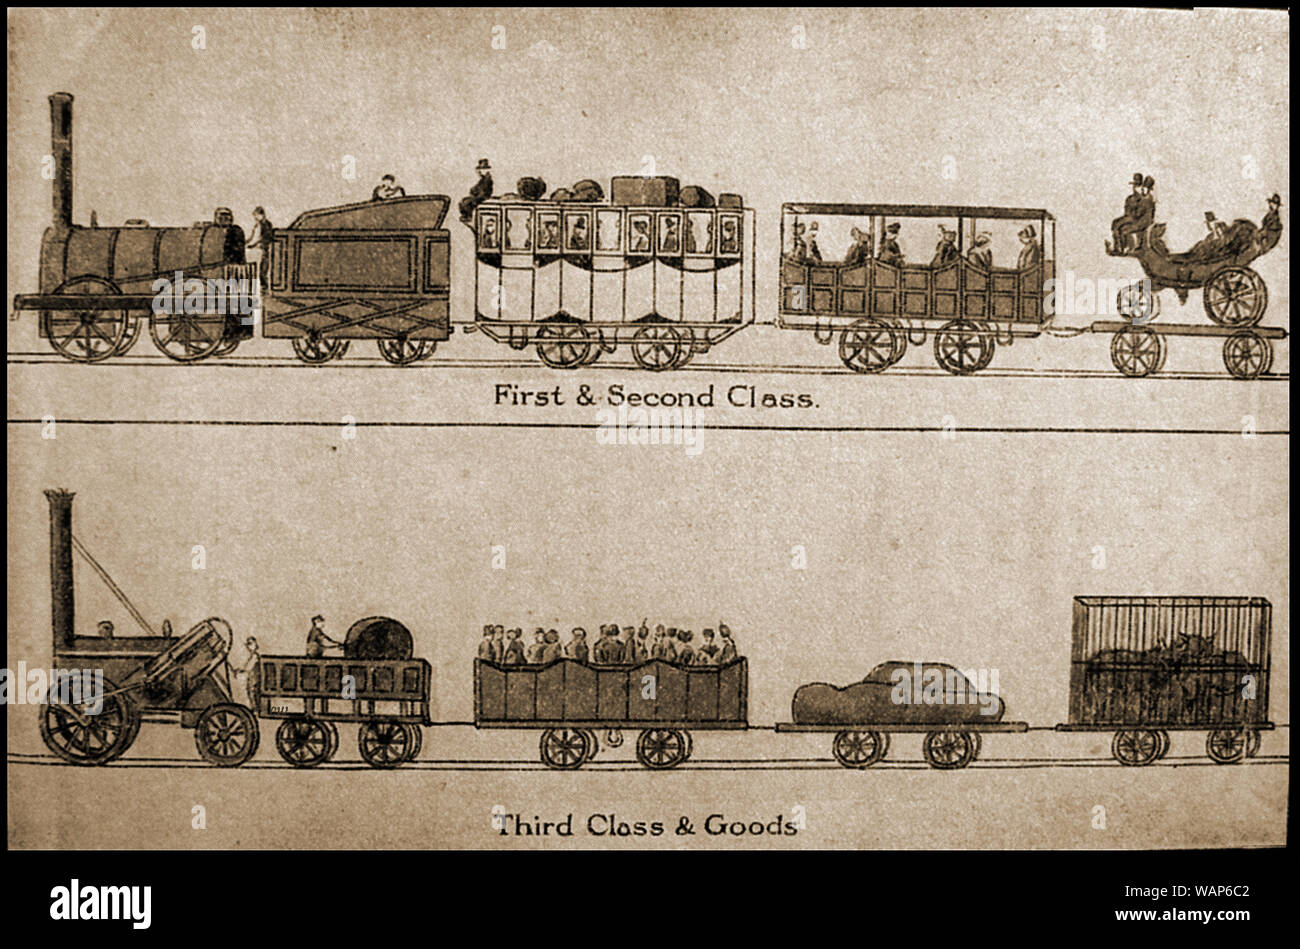 Una bella illustrazione delle classi disponibili per il treno a vapore di viaggio in epoca vittoriana -1st class - 2a classe - 3a classe - classe di merci Foto Stock